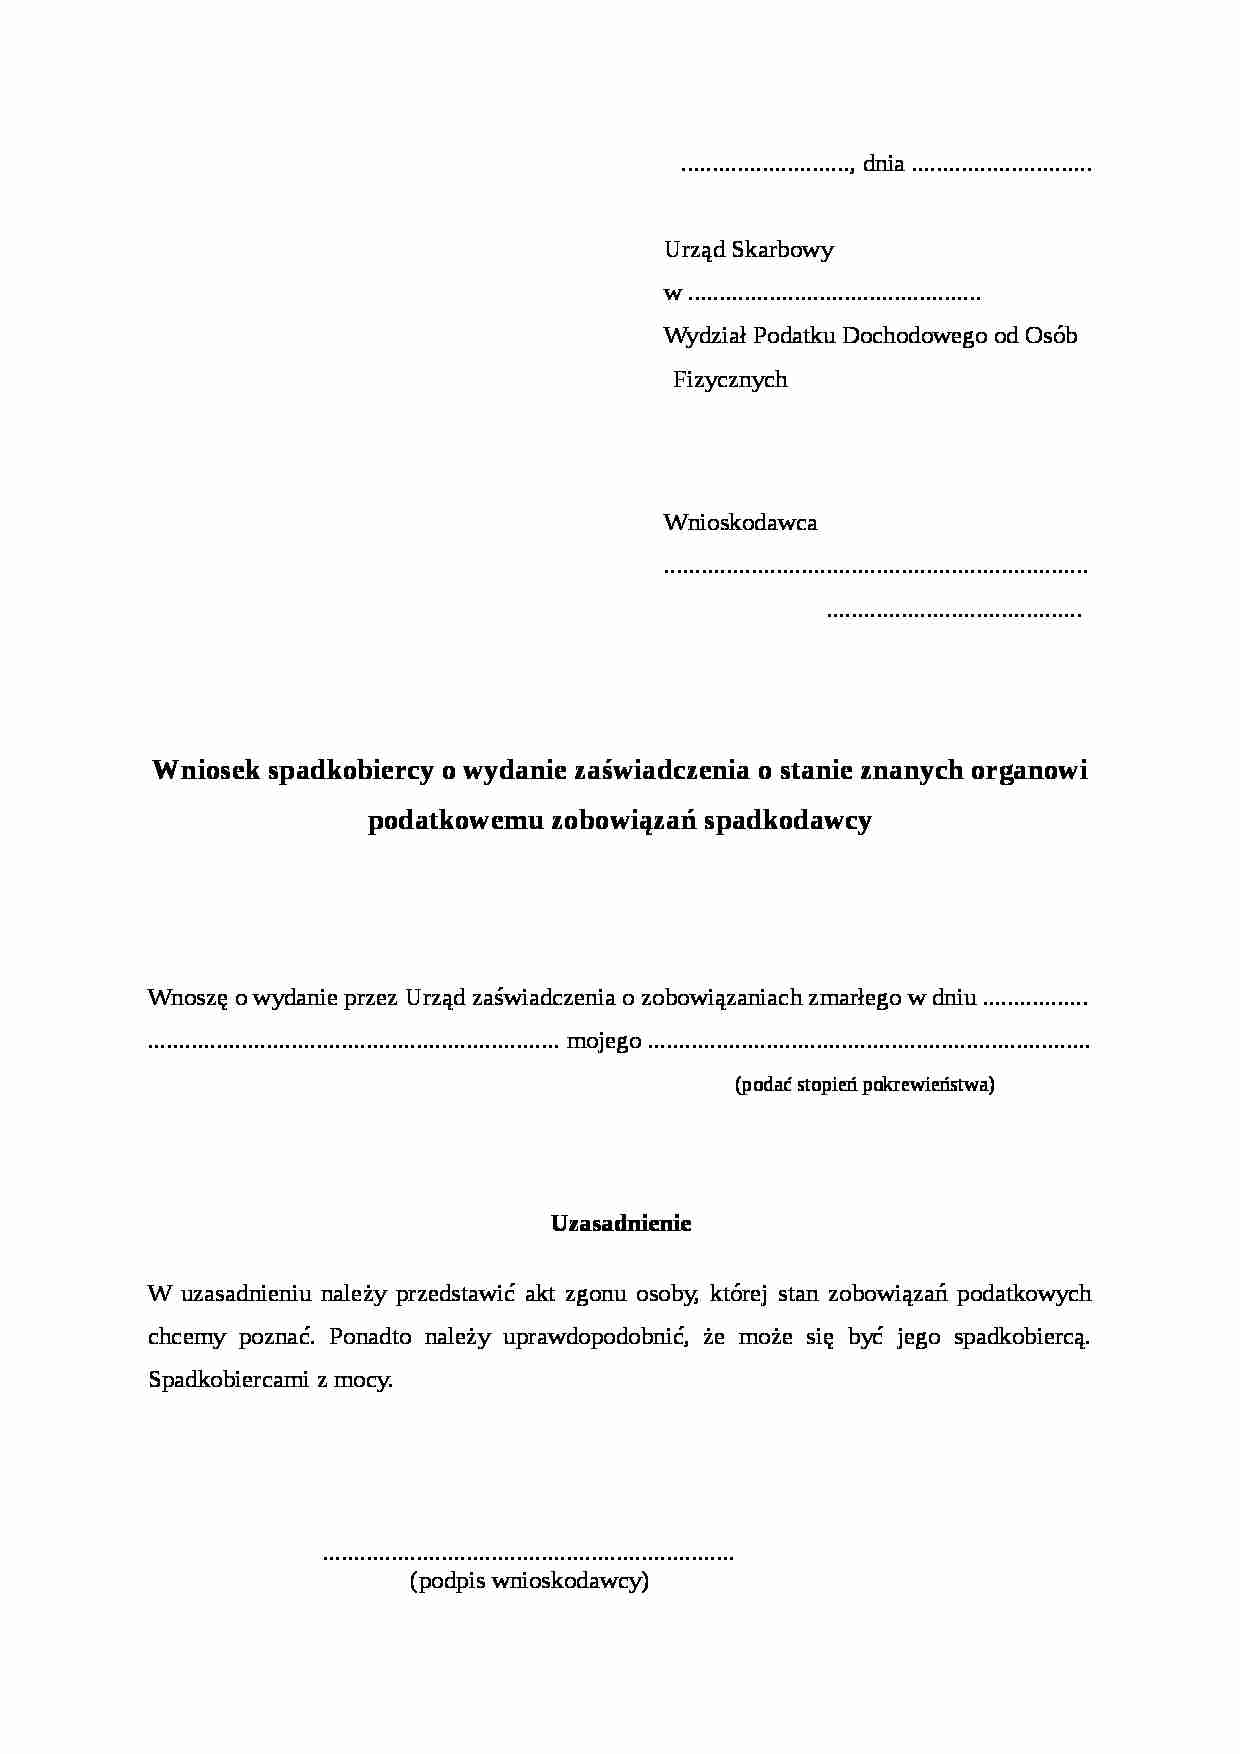 Wzór-Wniosek spadkobiercy o wydanie zaswiadczenia o stanie zobowiązań spadkodawcy - strona 1